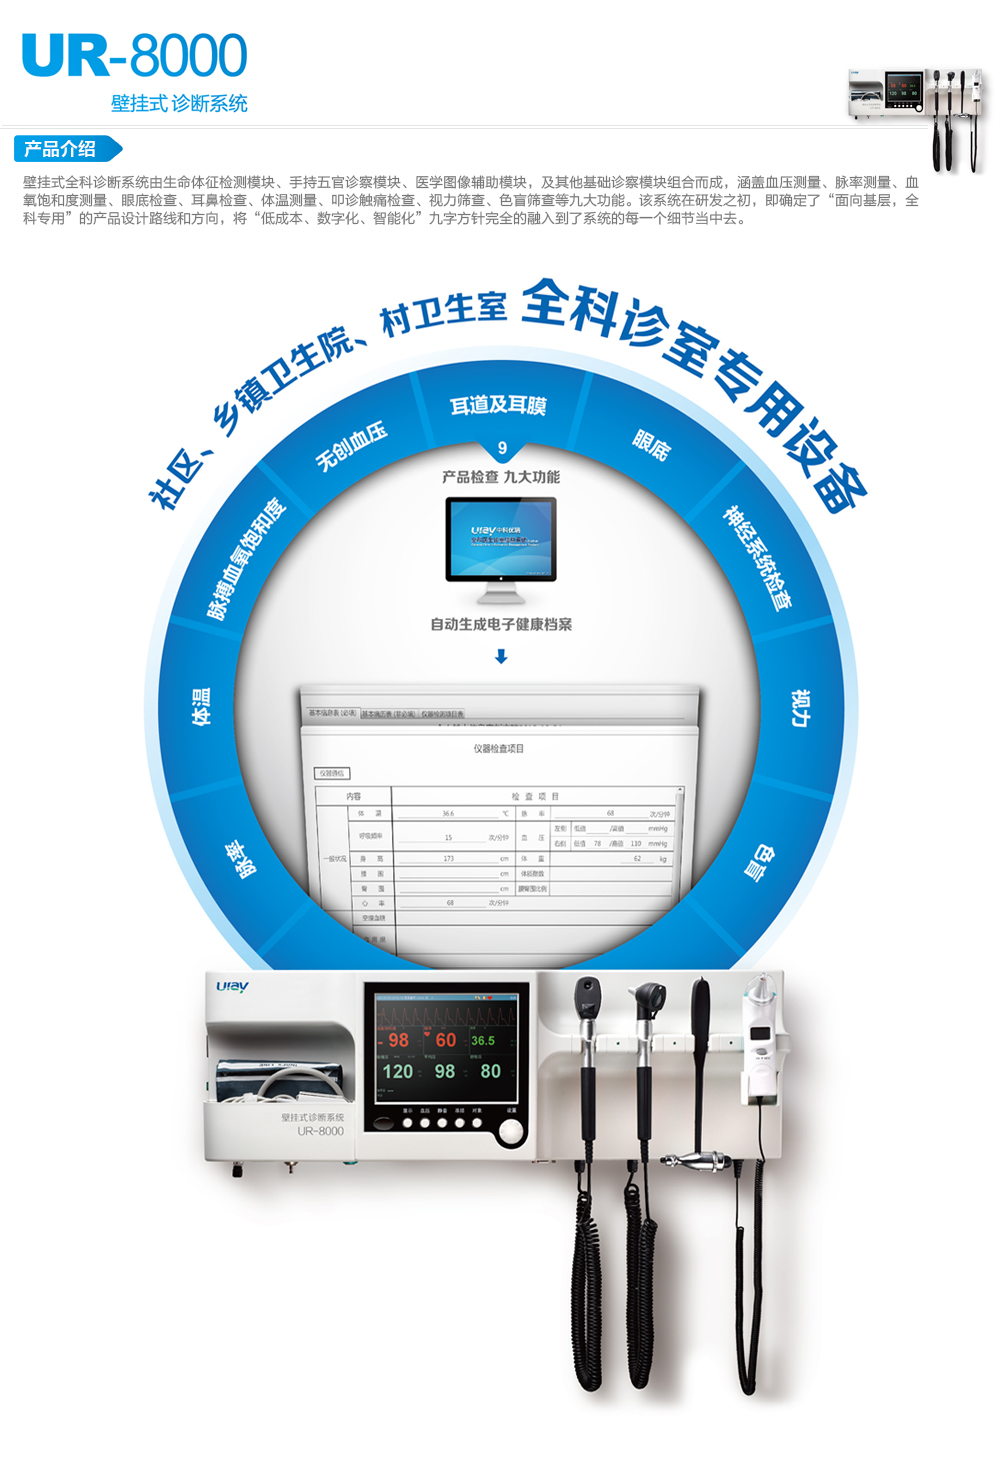 壁挂式全科诊断系统UR-8000